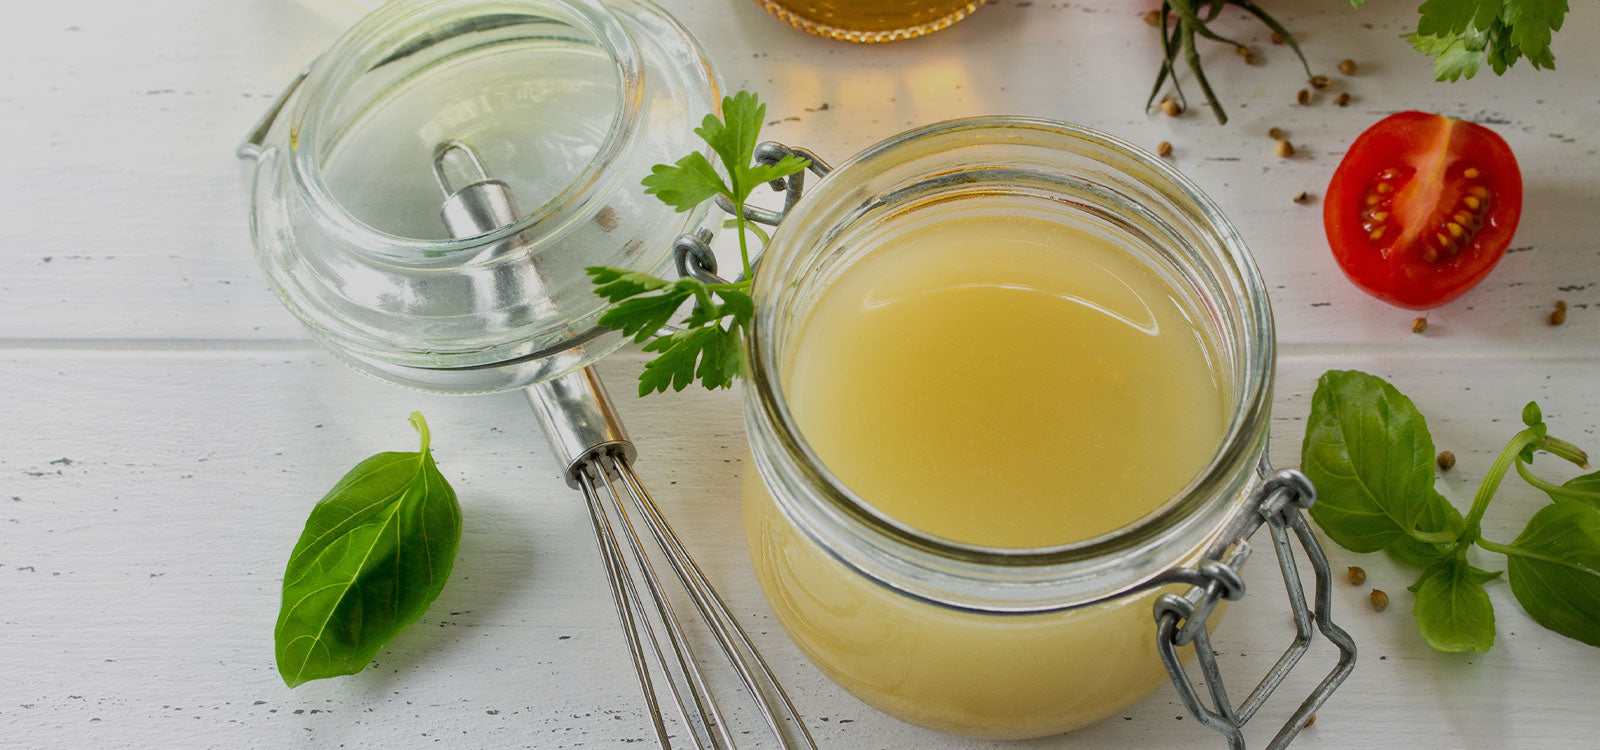 Оливковое масло и лимонный сок. Соус к креветкам оливковое масло, лимон, мед. Оливковое масло с медом и лимонным соком по утрам. Мед, лимон, яблочный уксус, женские руки. Лимонный сок мед масло